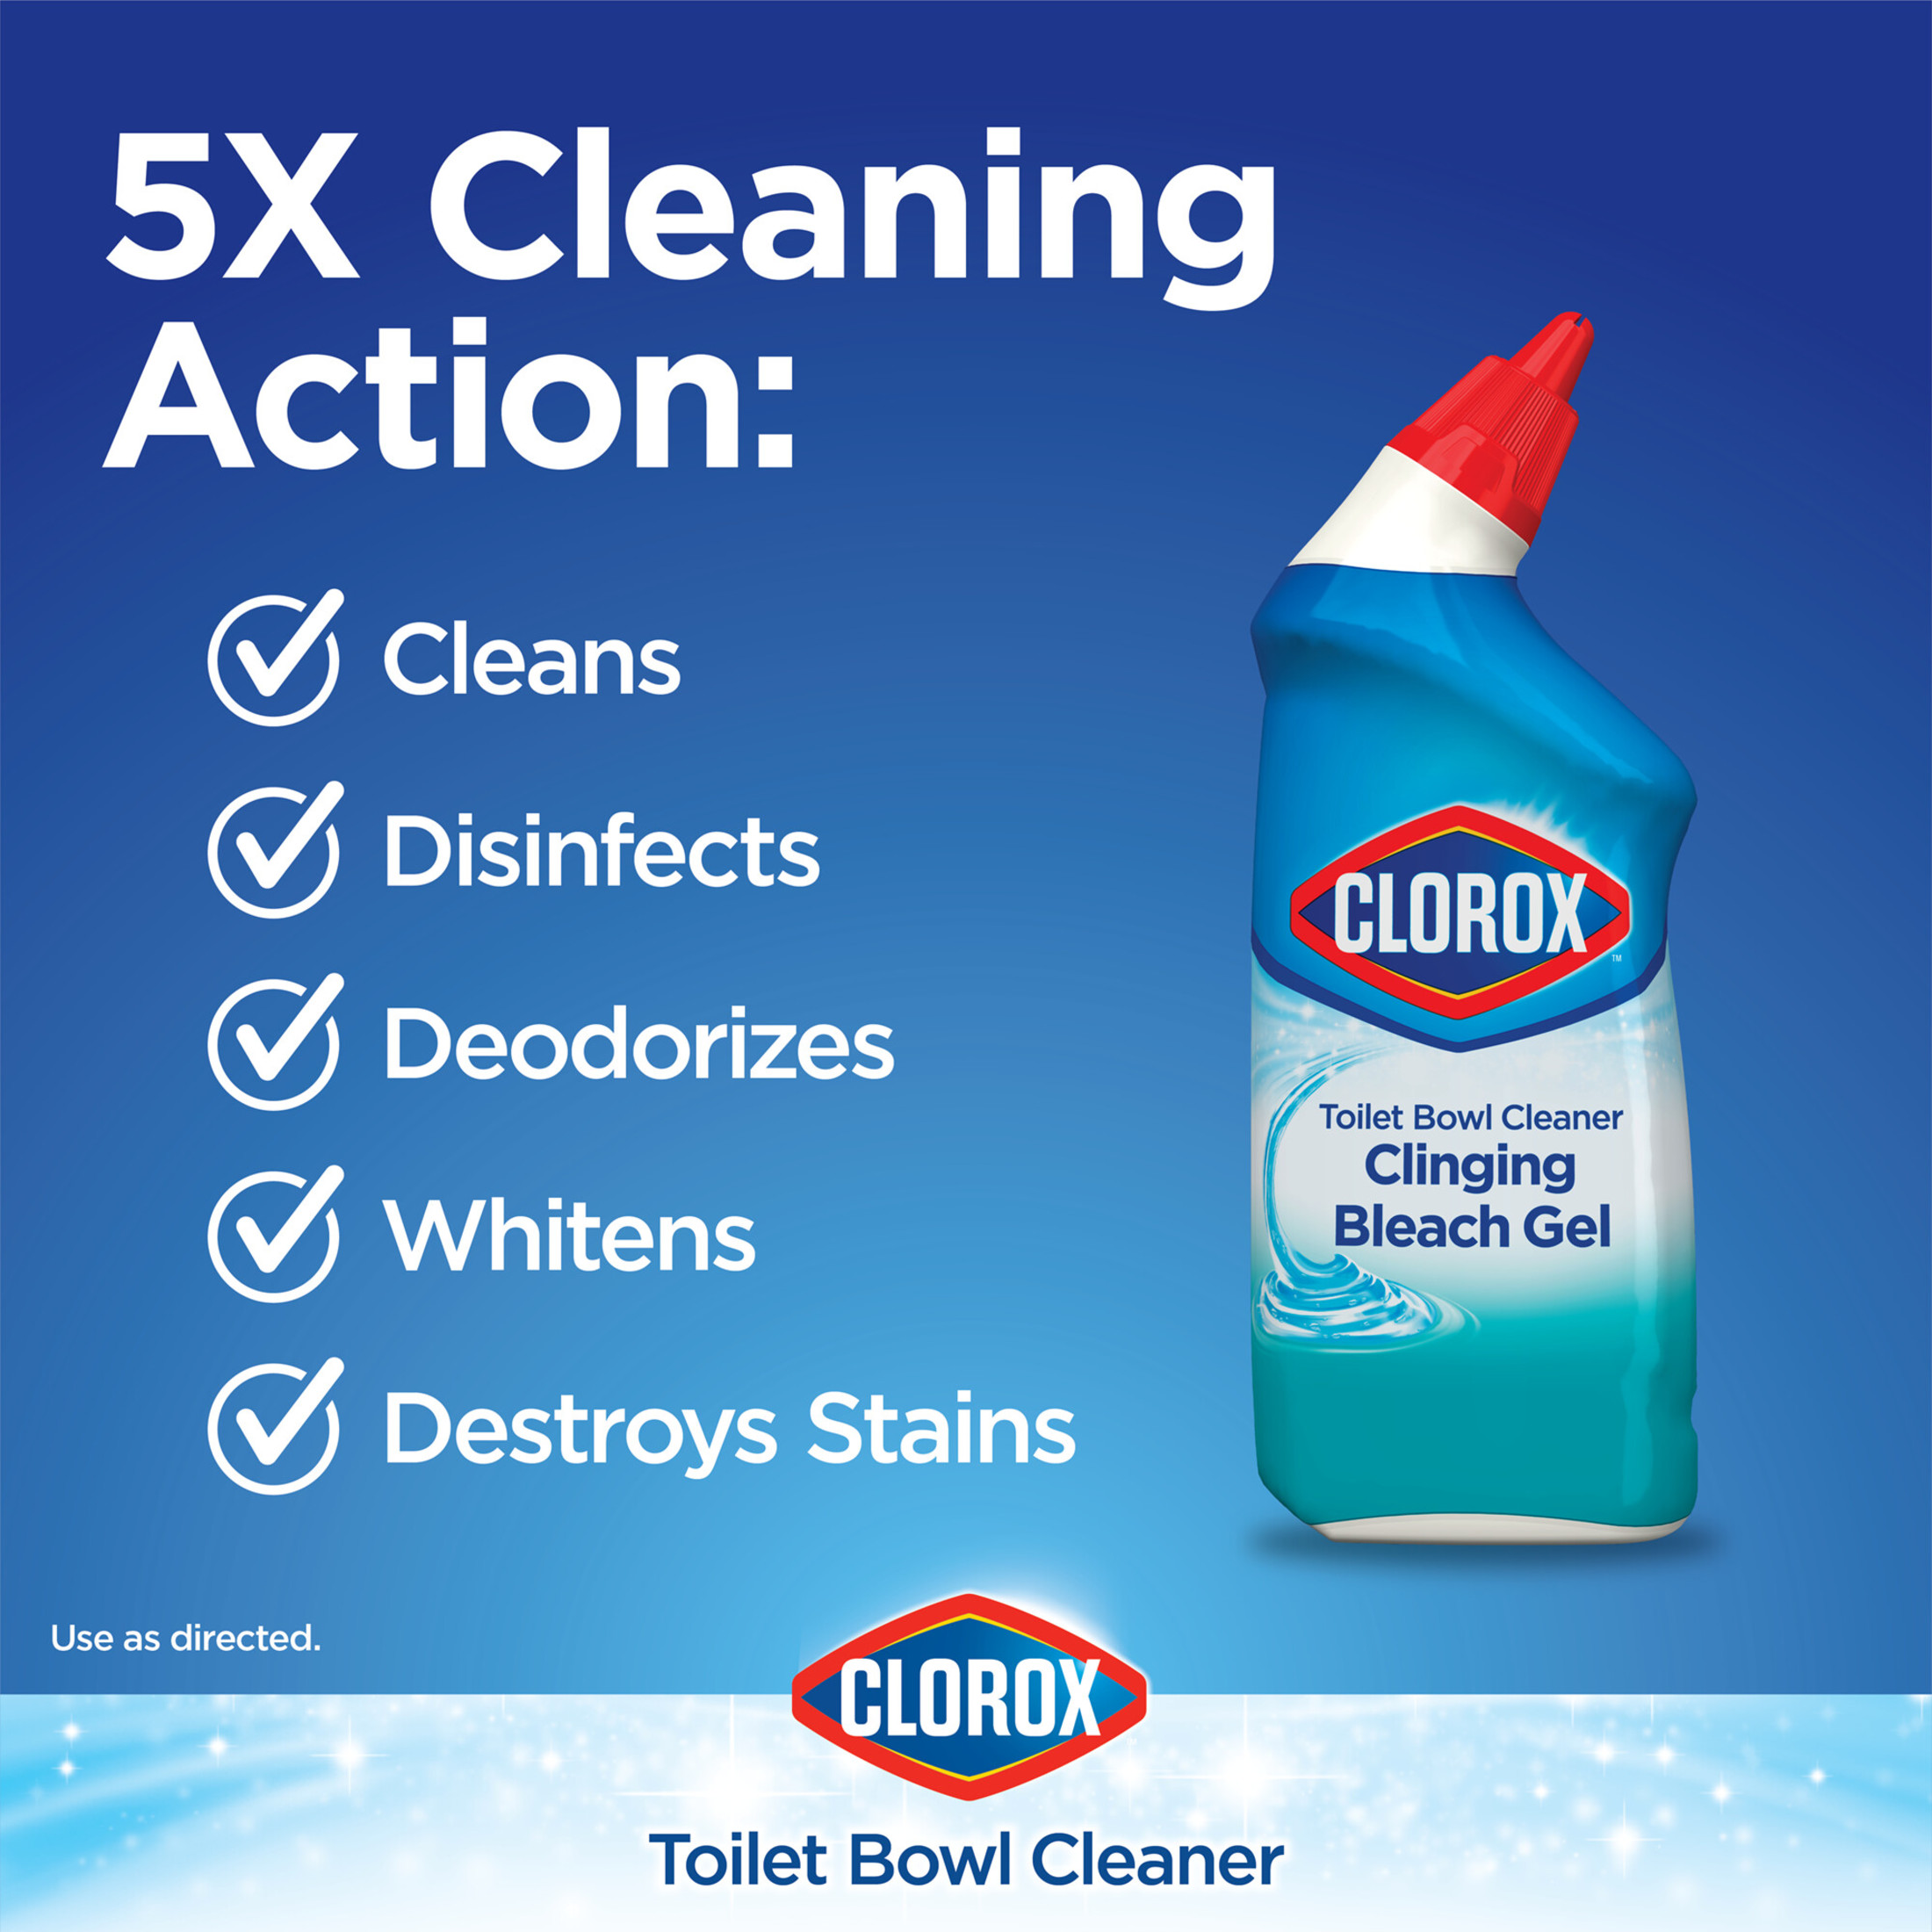 Clorox Toilet Bowl Cleaner Clinging Bleach Gel, Ocean Mist, 24 fl oz, 2 Pack - image 4 of 10